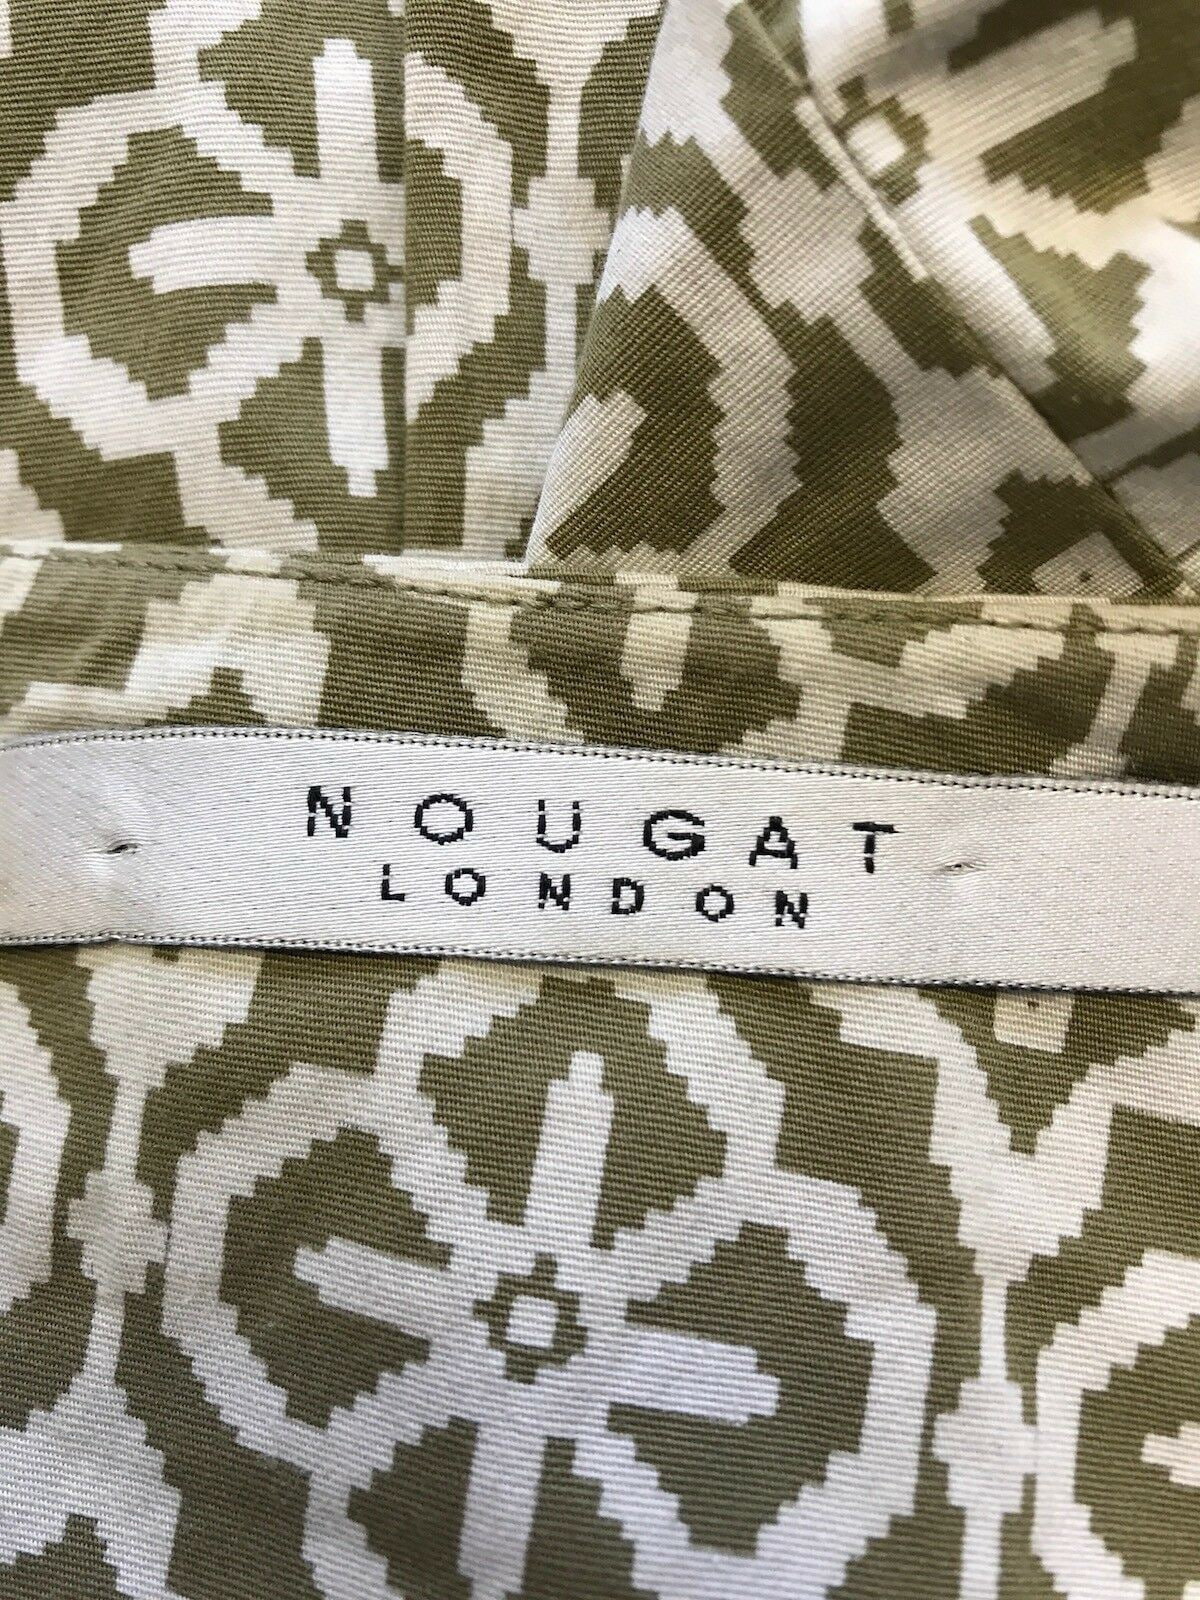 Nougat London Khaki & Cream Pencil Skirt Size UK 10 US 6 EU 38 Timeless Fashions